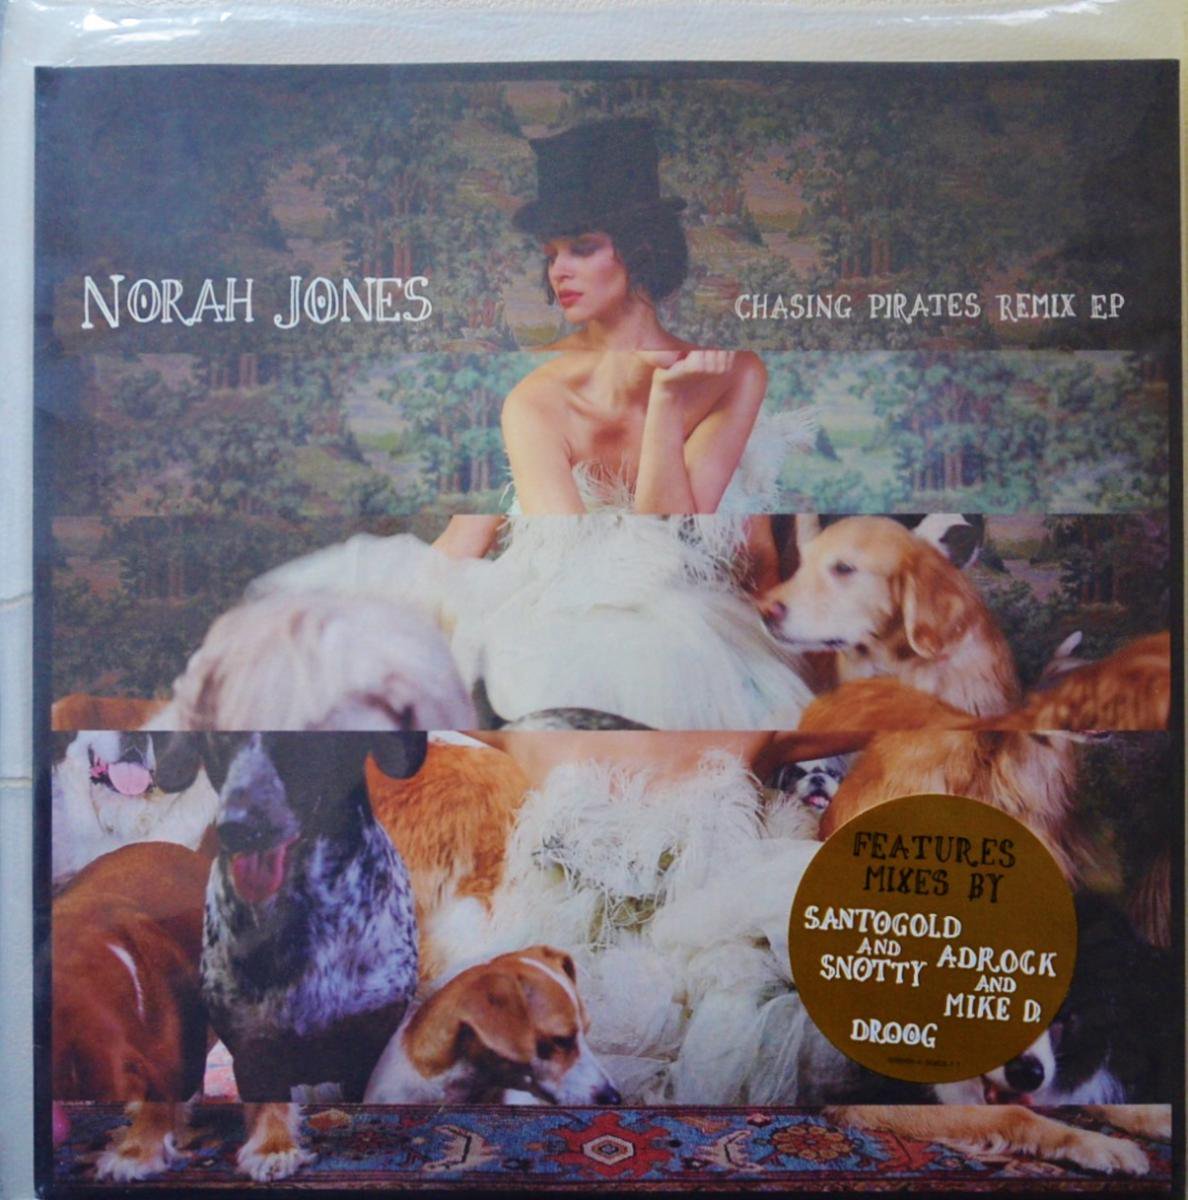 NORAH JONES / CHASING PIRATES REMIX EP (12